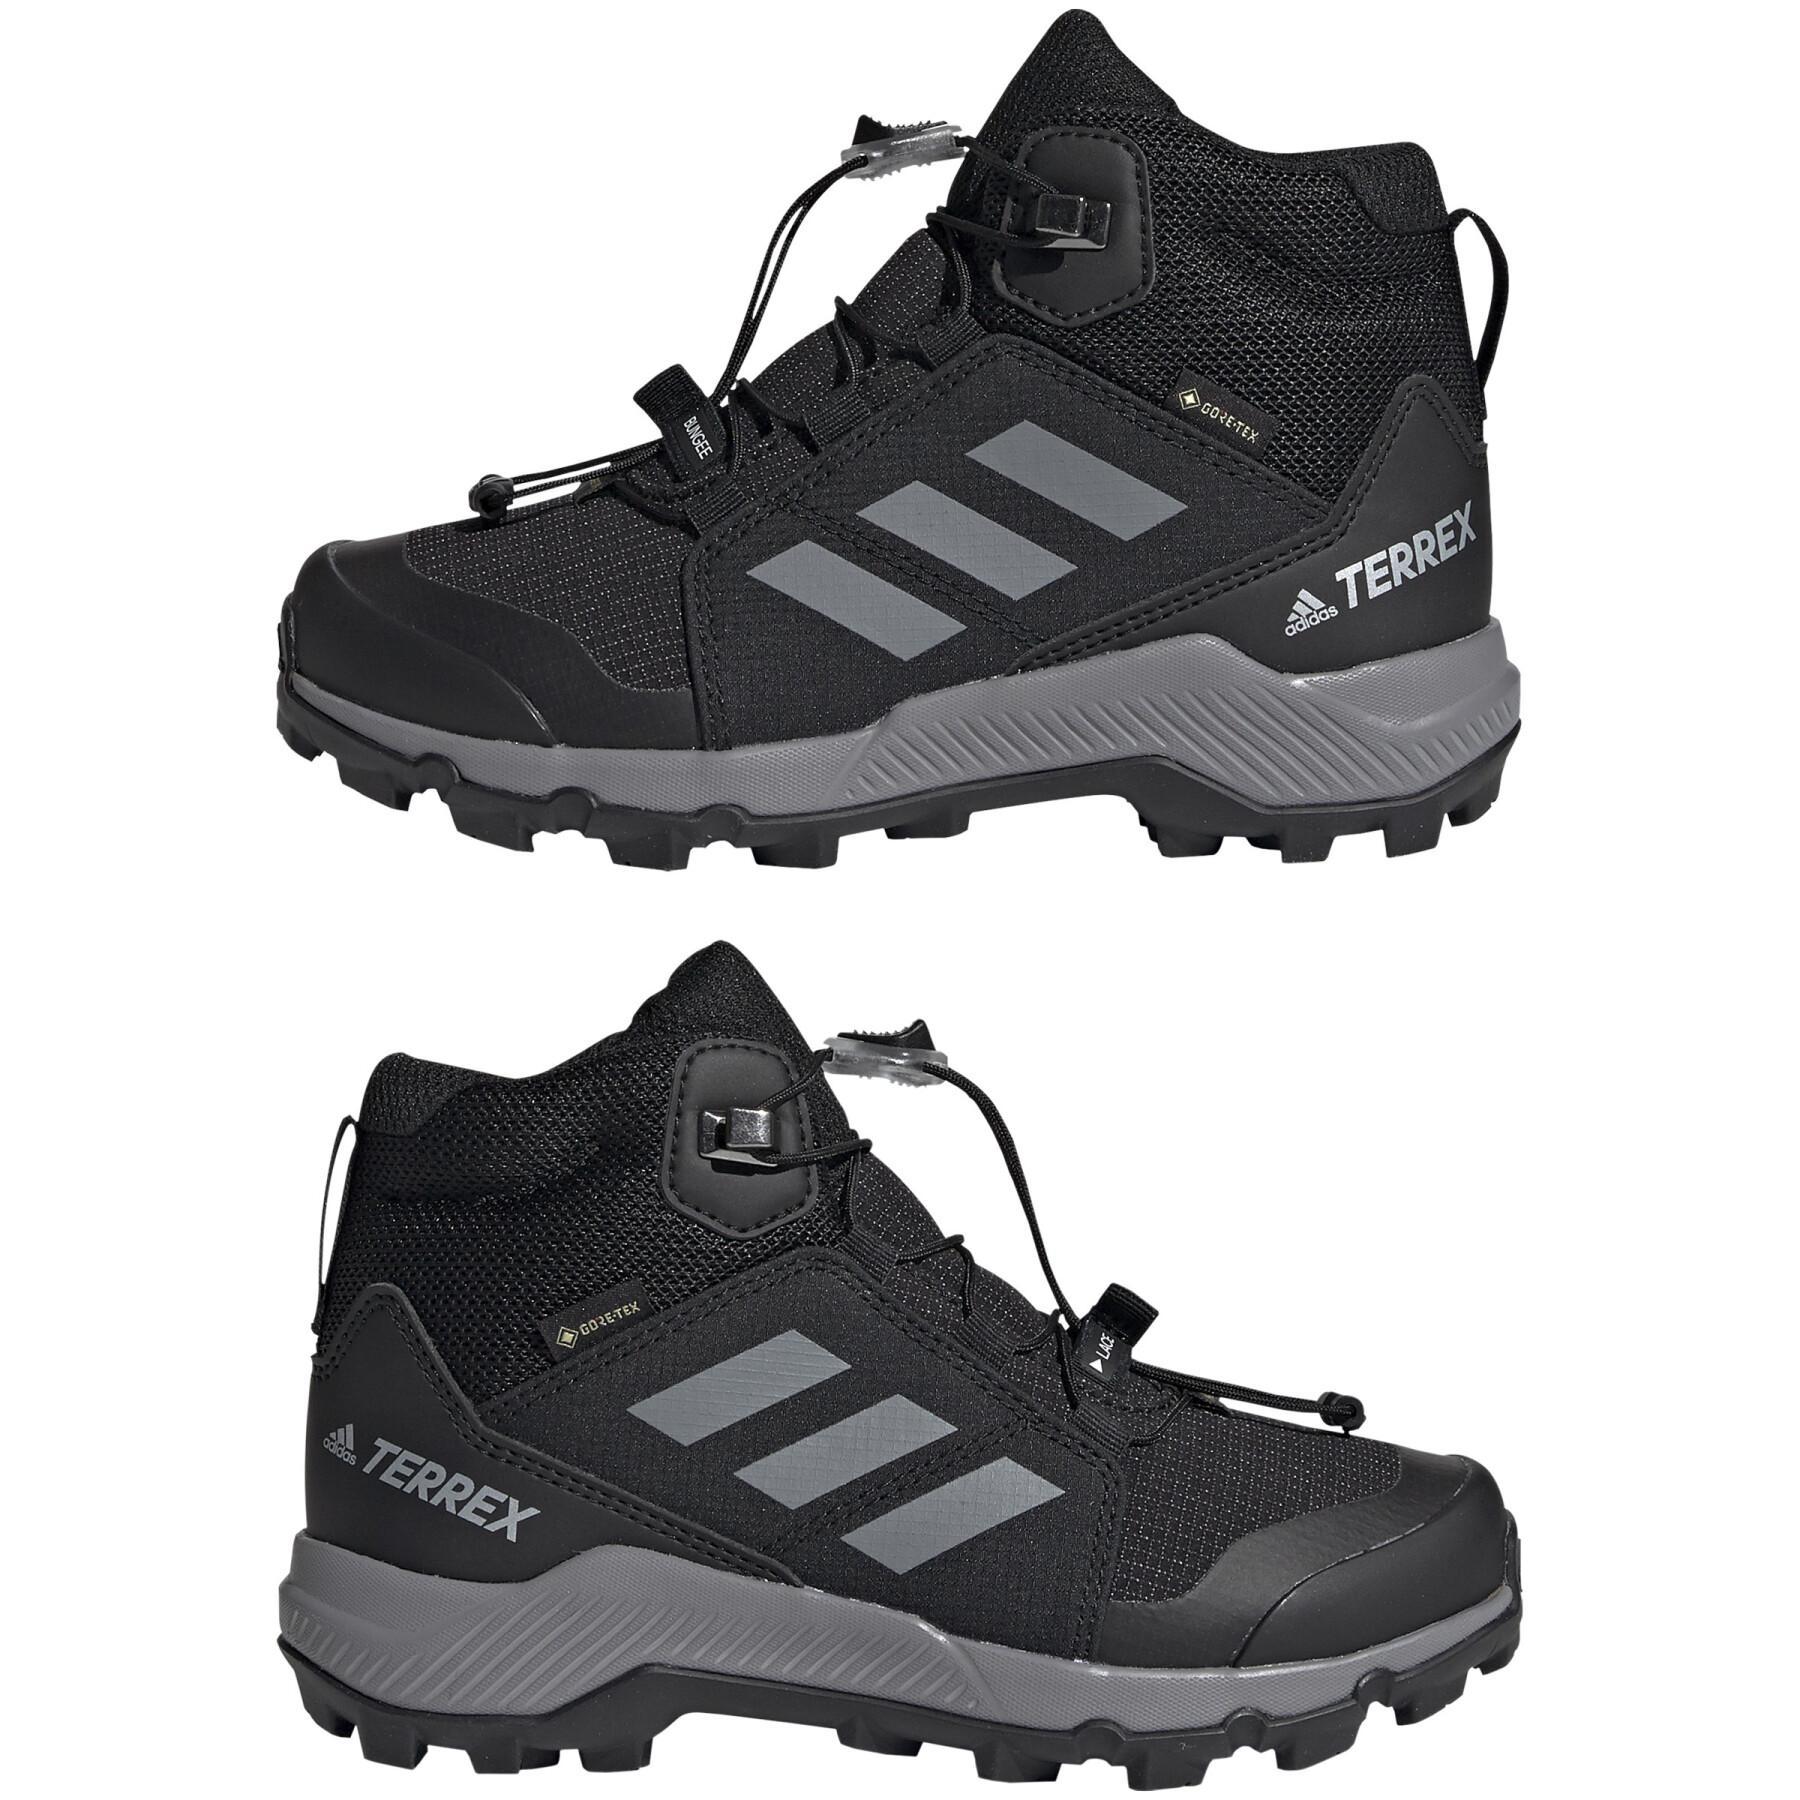 Kid hiking shoes adidas Terrex Mid Gtx